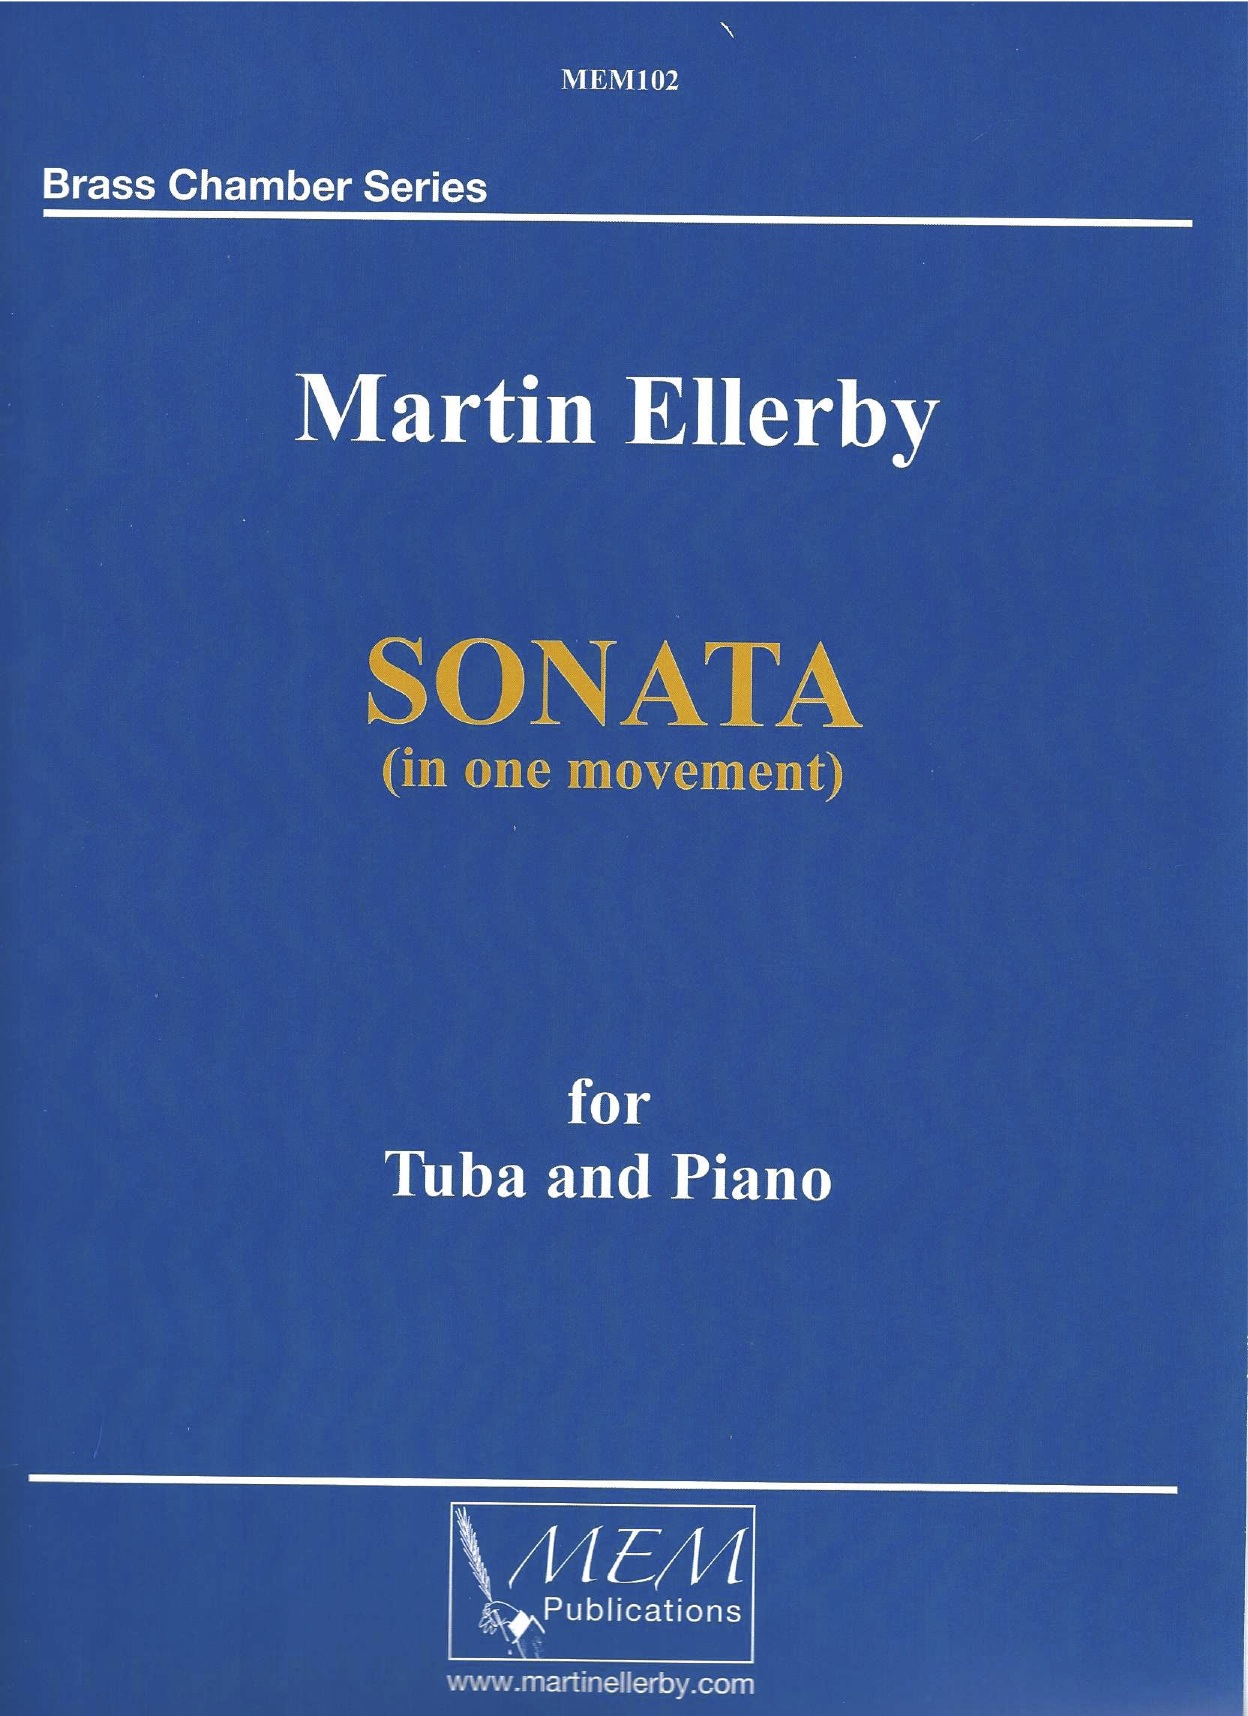 Sonata for Tuba and Piano - Martin Ellerby